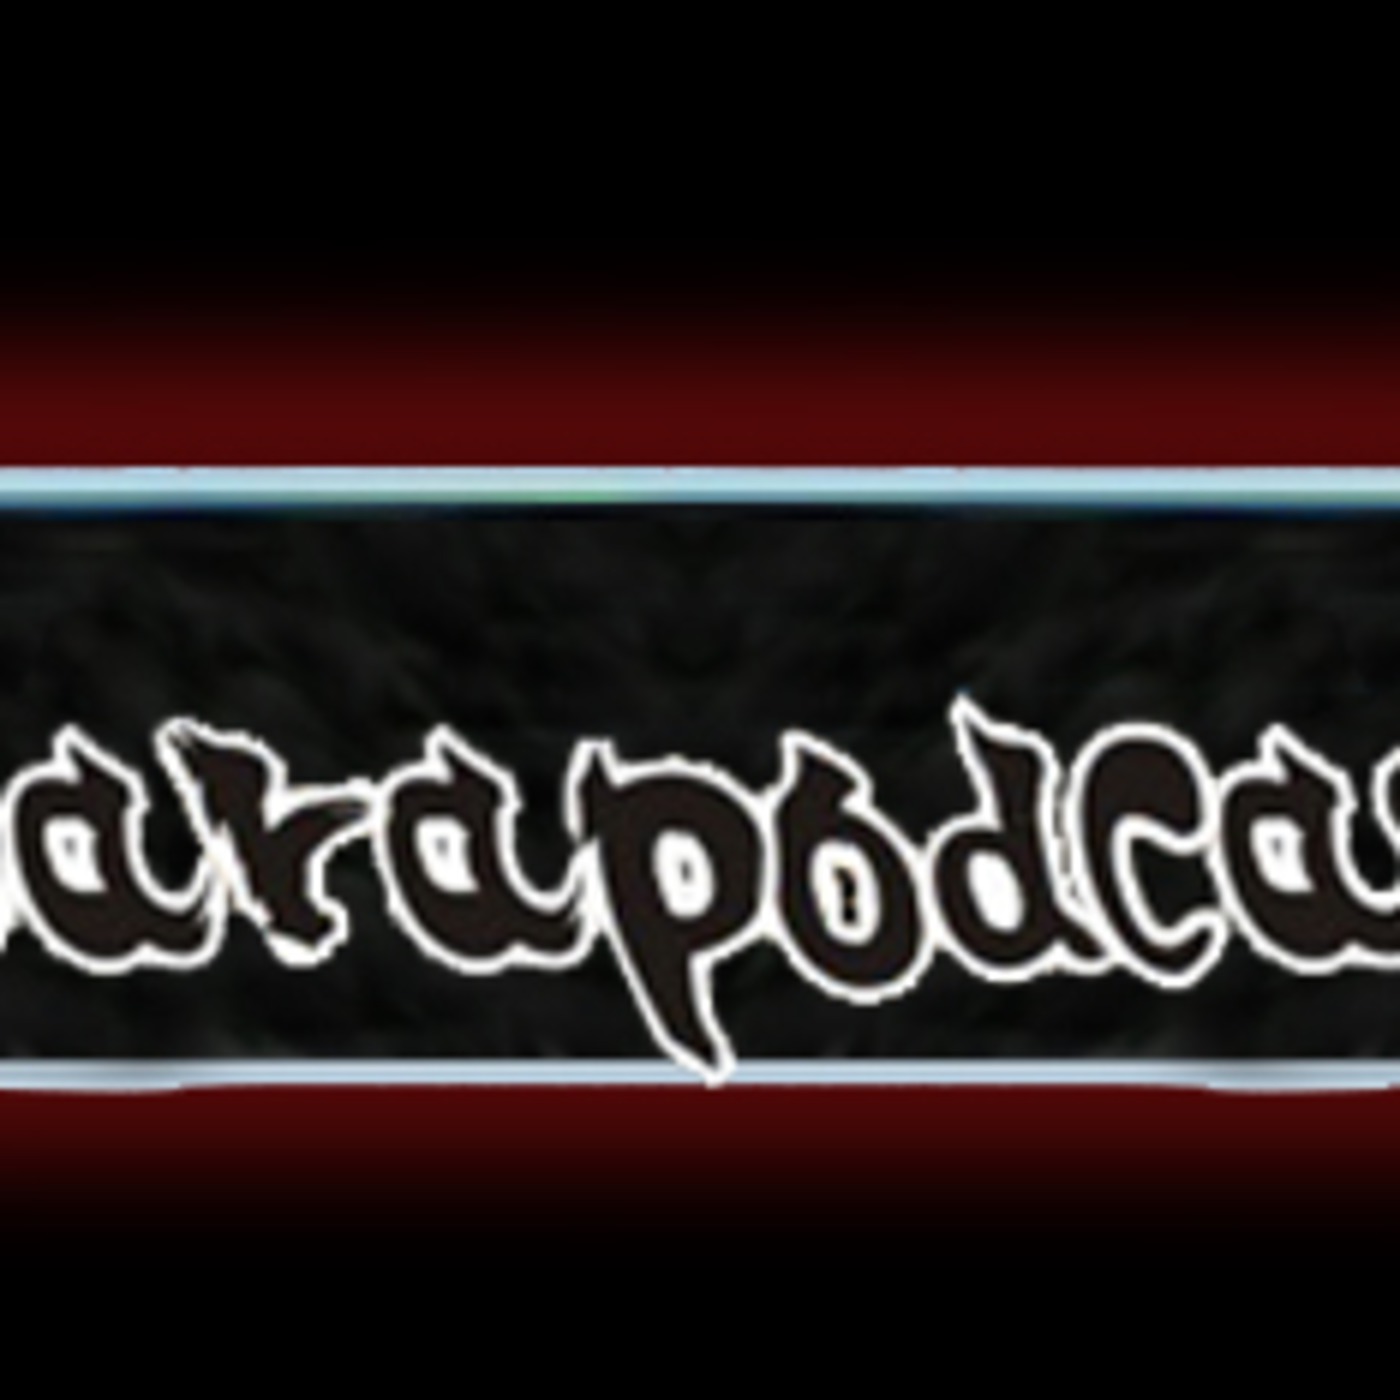 Karapodcast's Podcast